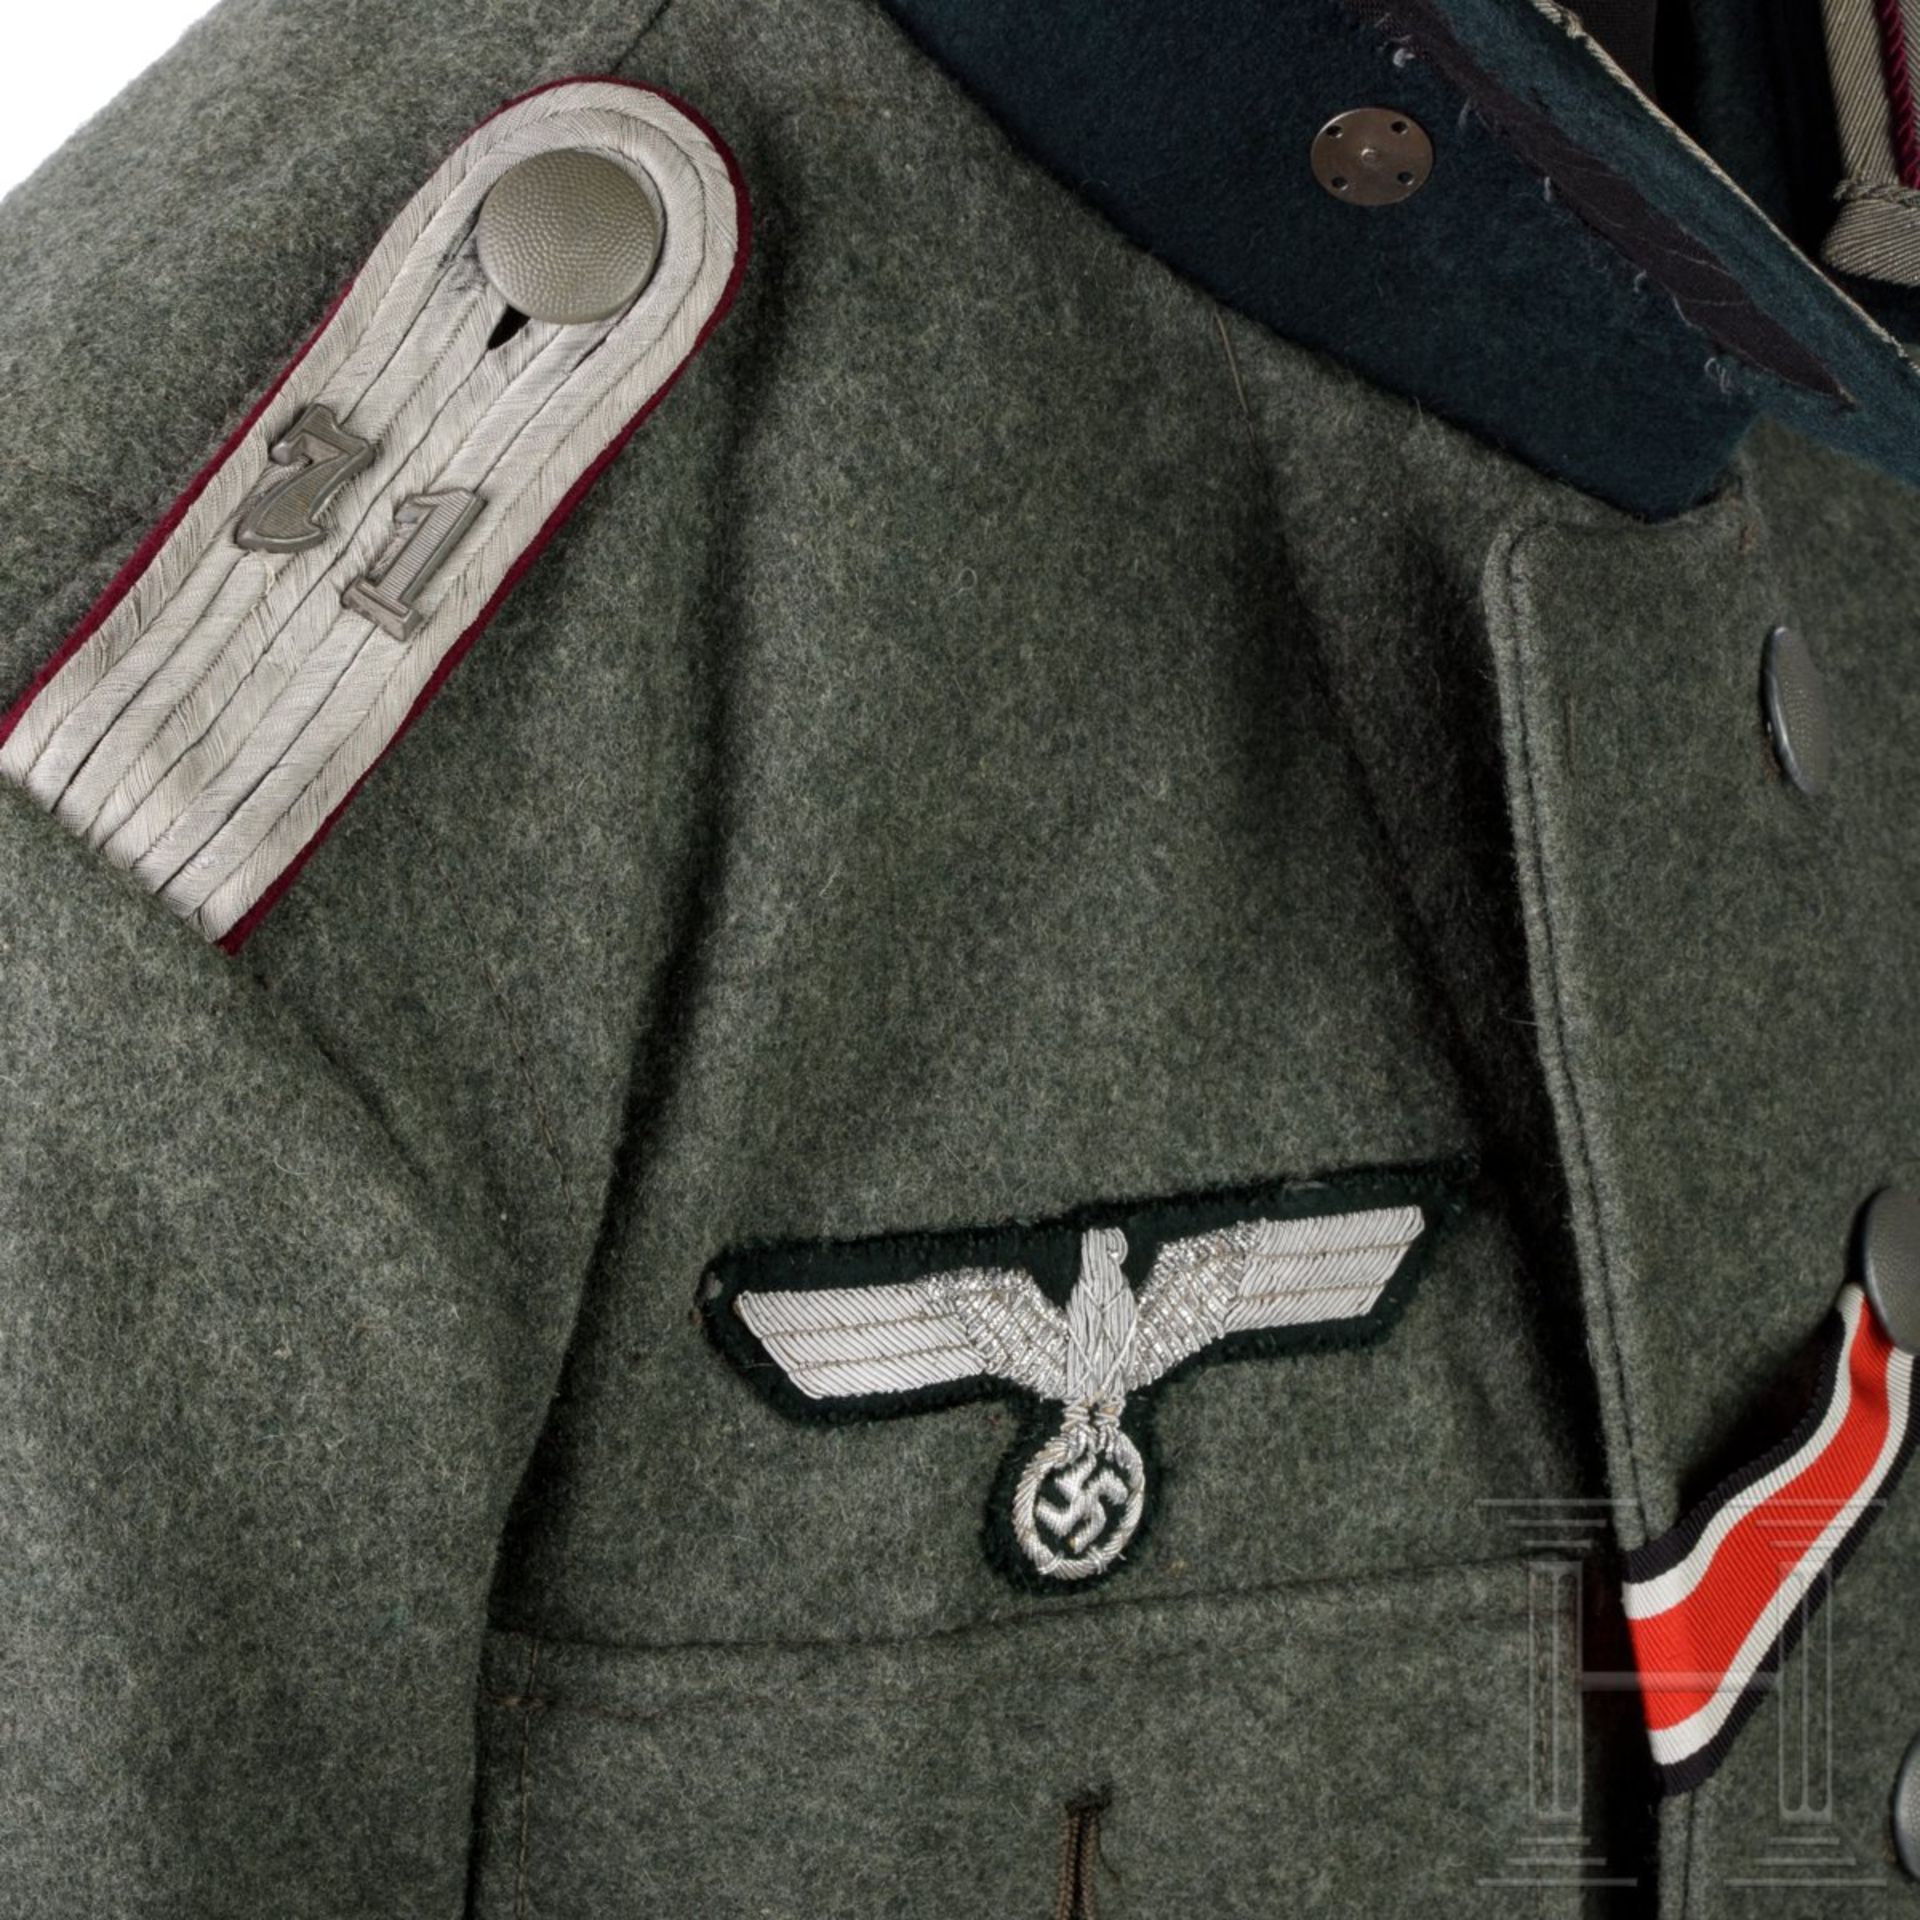 Uniformensemble für einen Leutnant im Nebelwerfer-Regiment 71 (Tropen) - Bild 4 aus 14